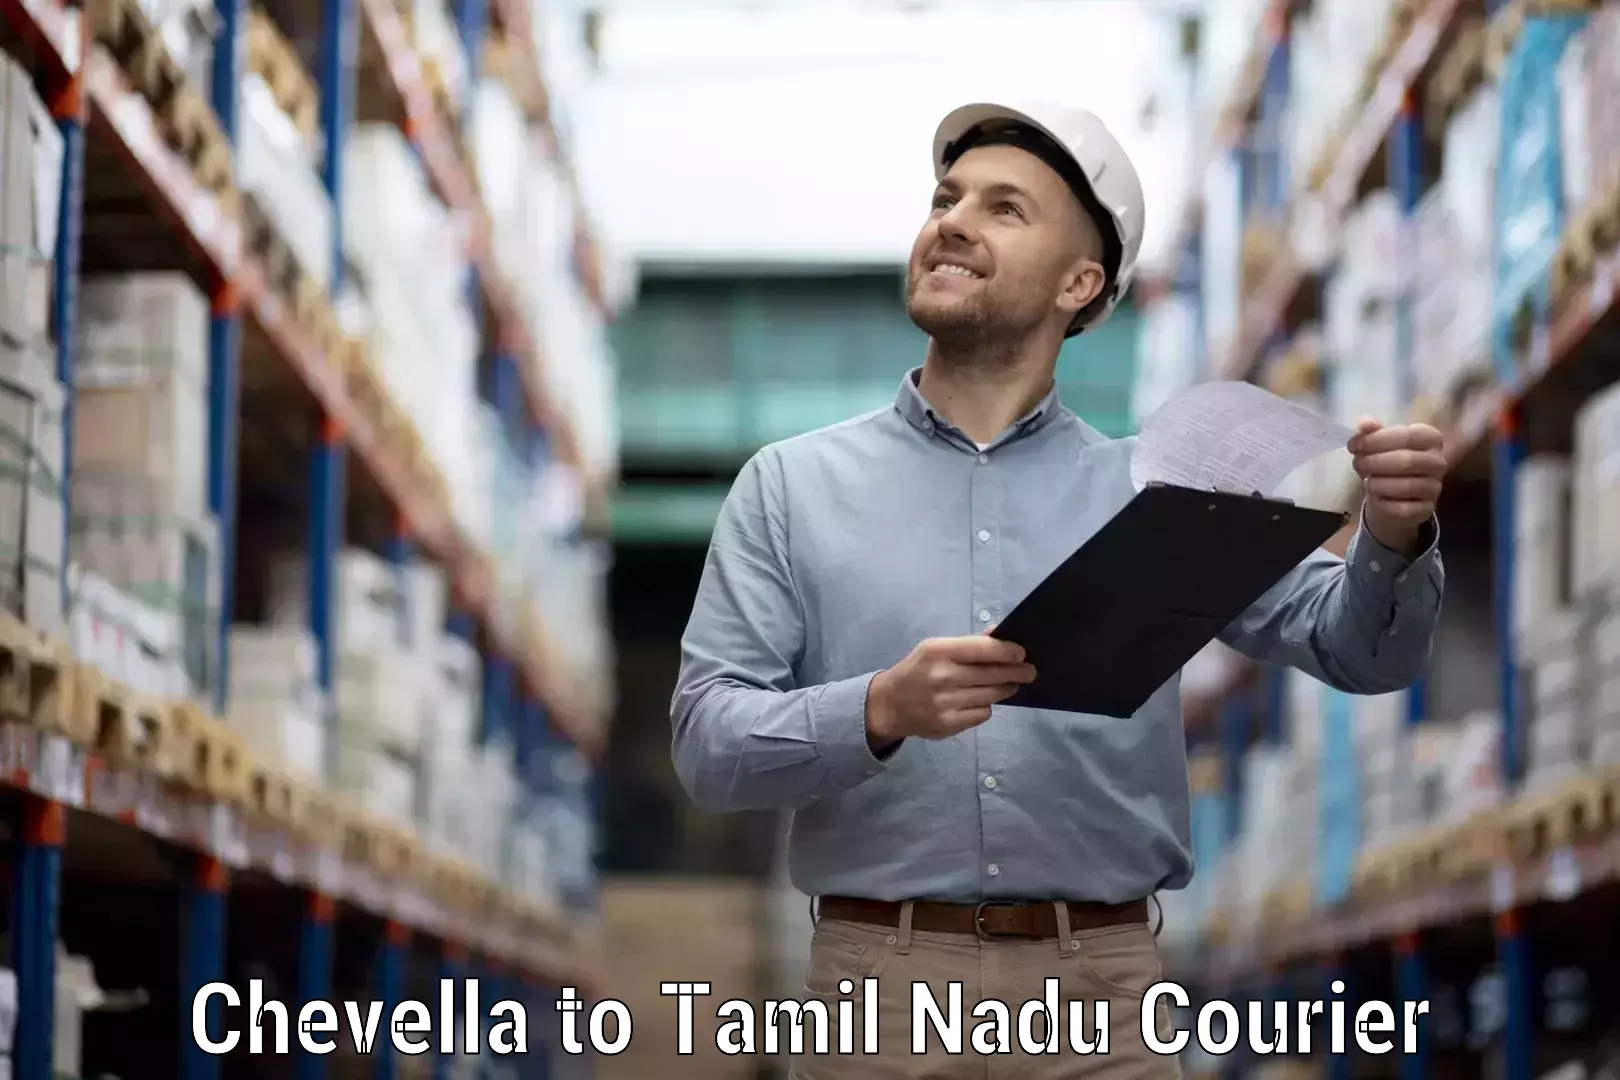 Courier service comparison Chevella to Coimbatore